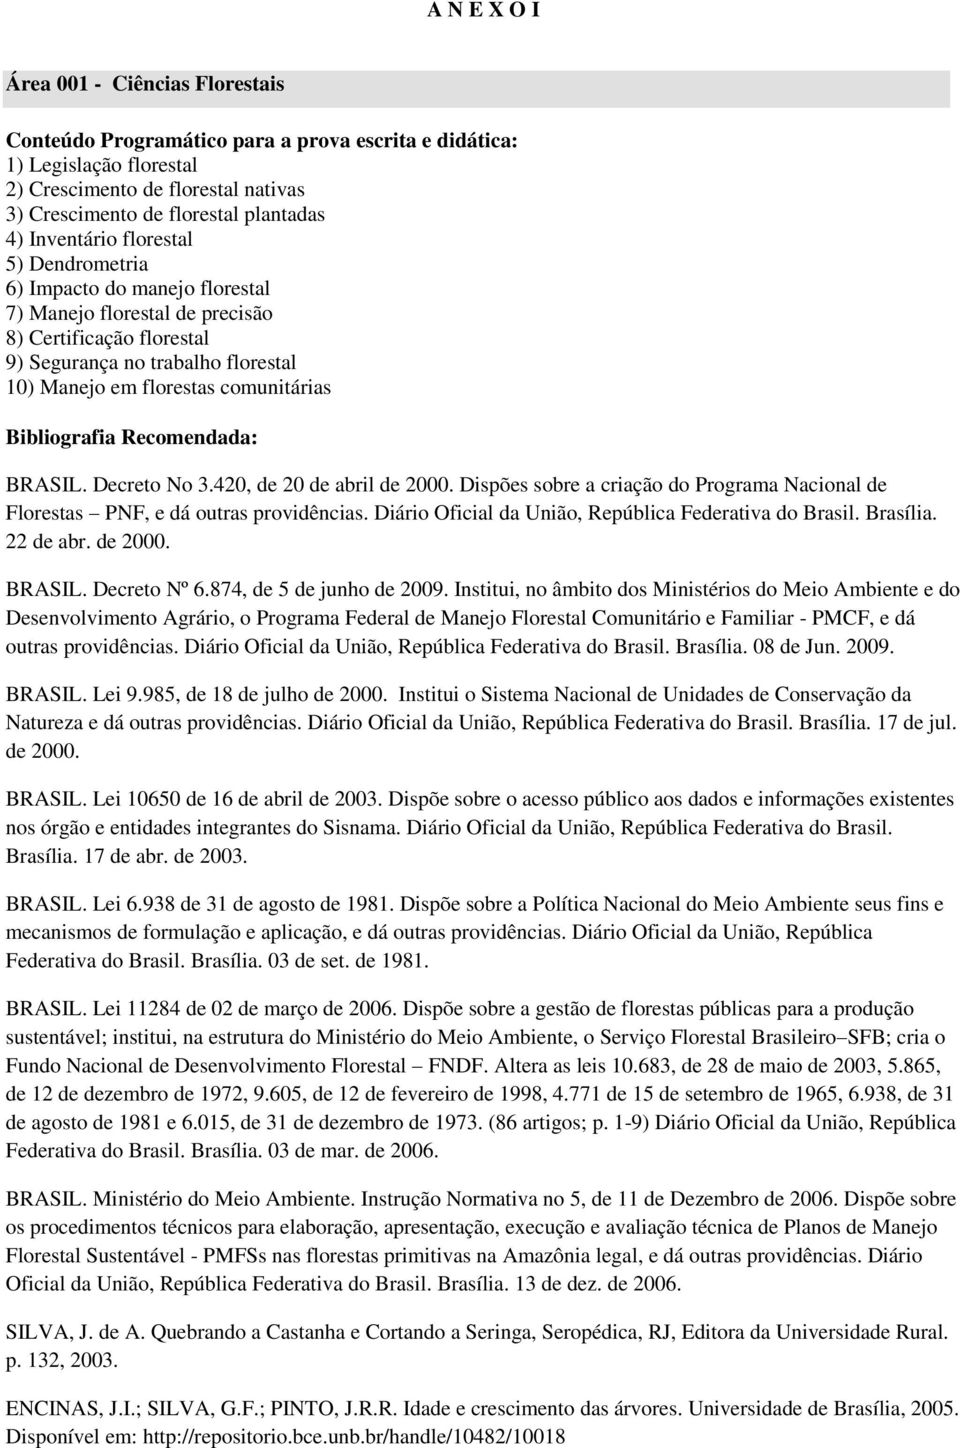 Bibliografia Recomendada: BRASIL. Decreto No 3.420, de 20 de abril de 2000. Dispões sobre a criação do Programa Nacional de Florestas PNF, e dá outras providências.